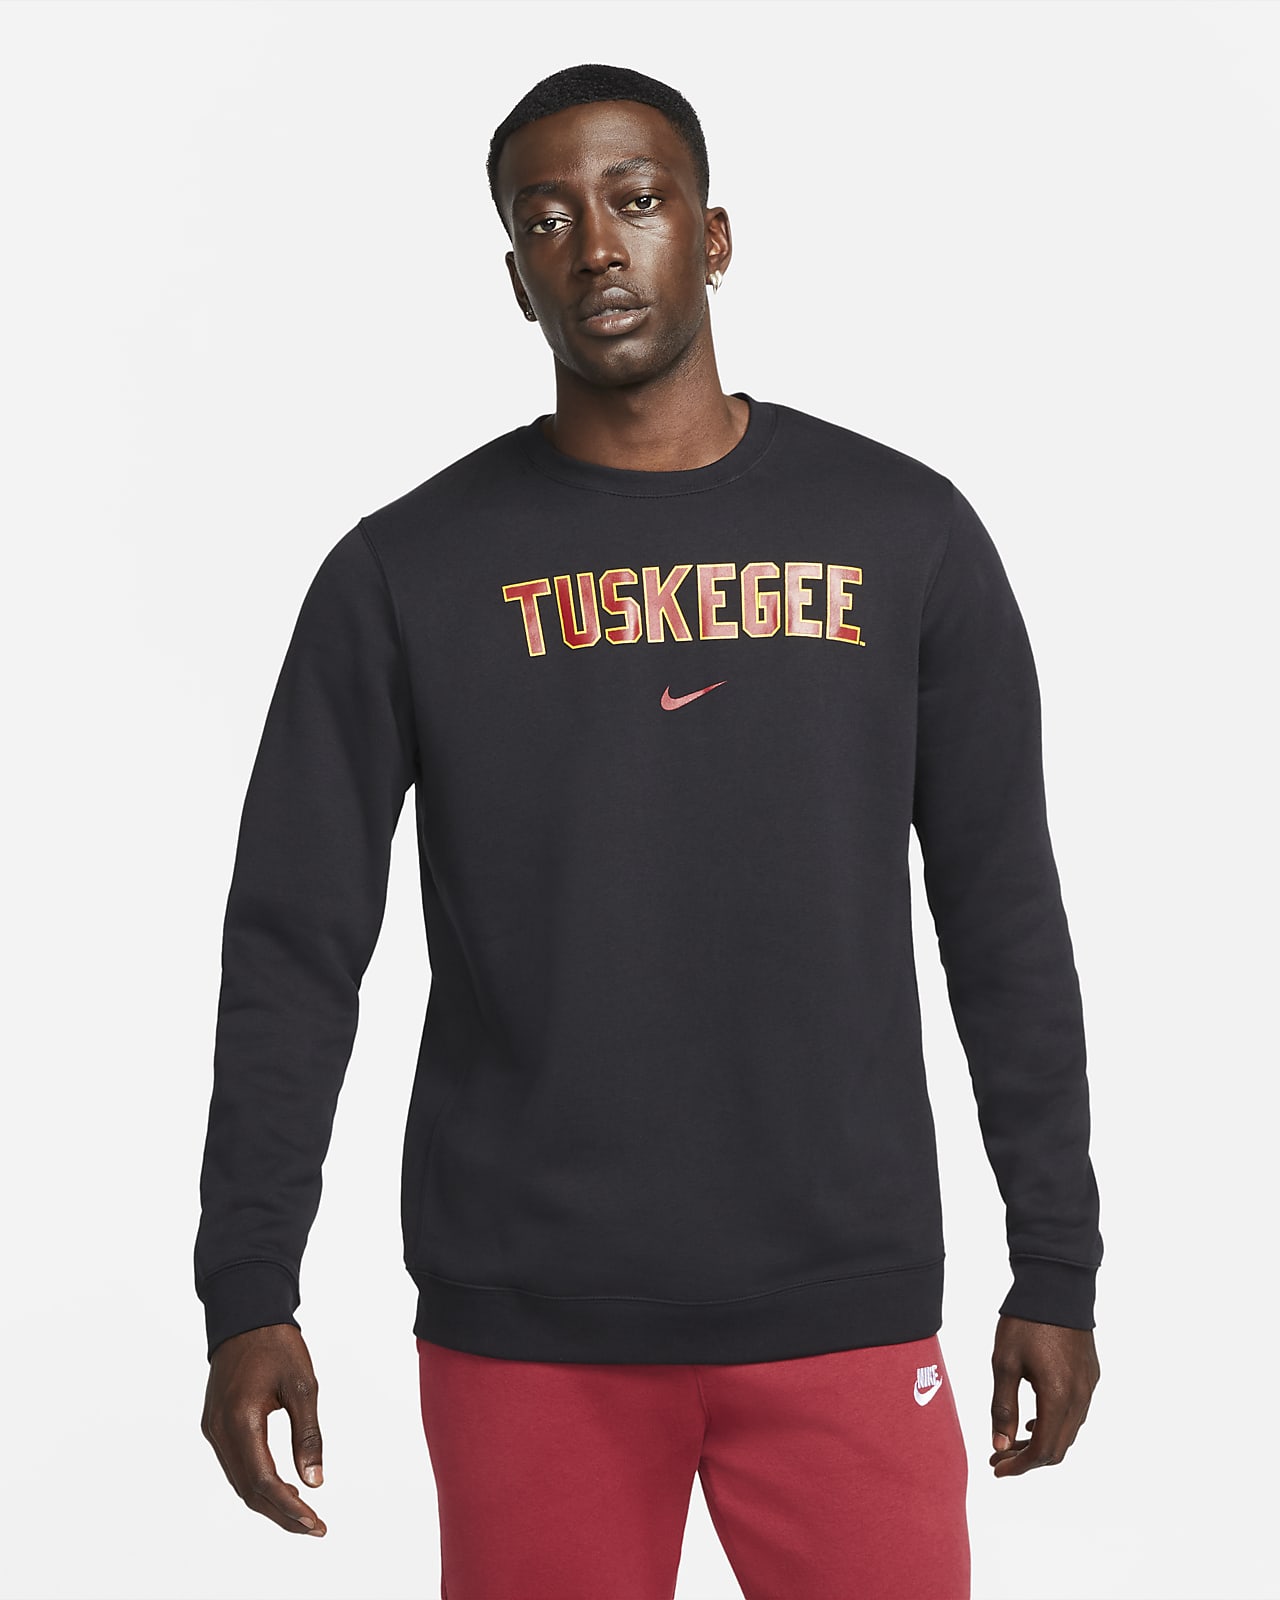 Nike College Club Fleece (Tuskegee) Crew Sweatshirt